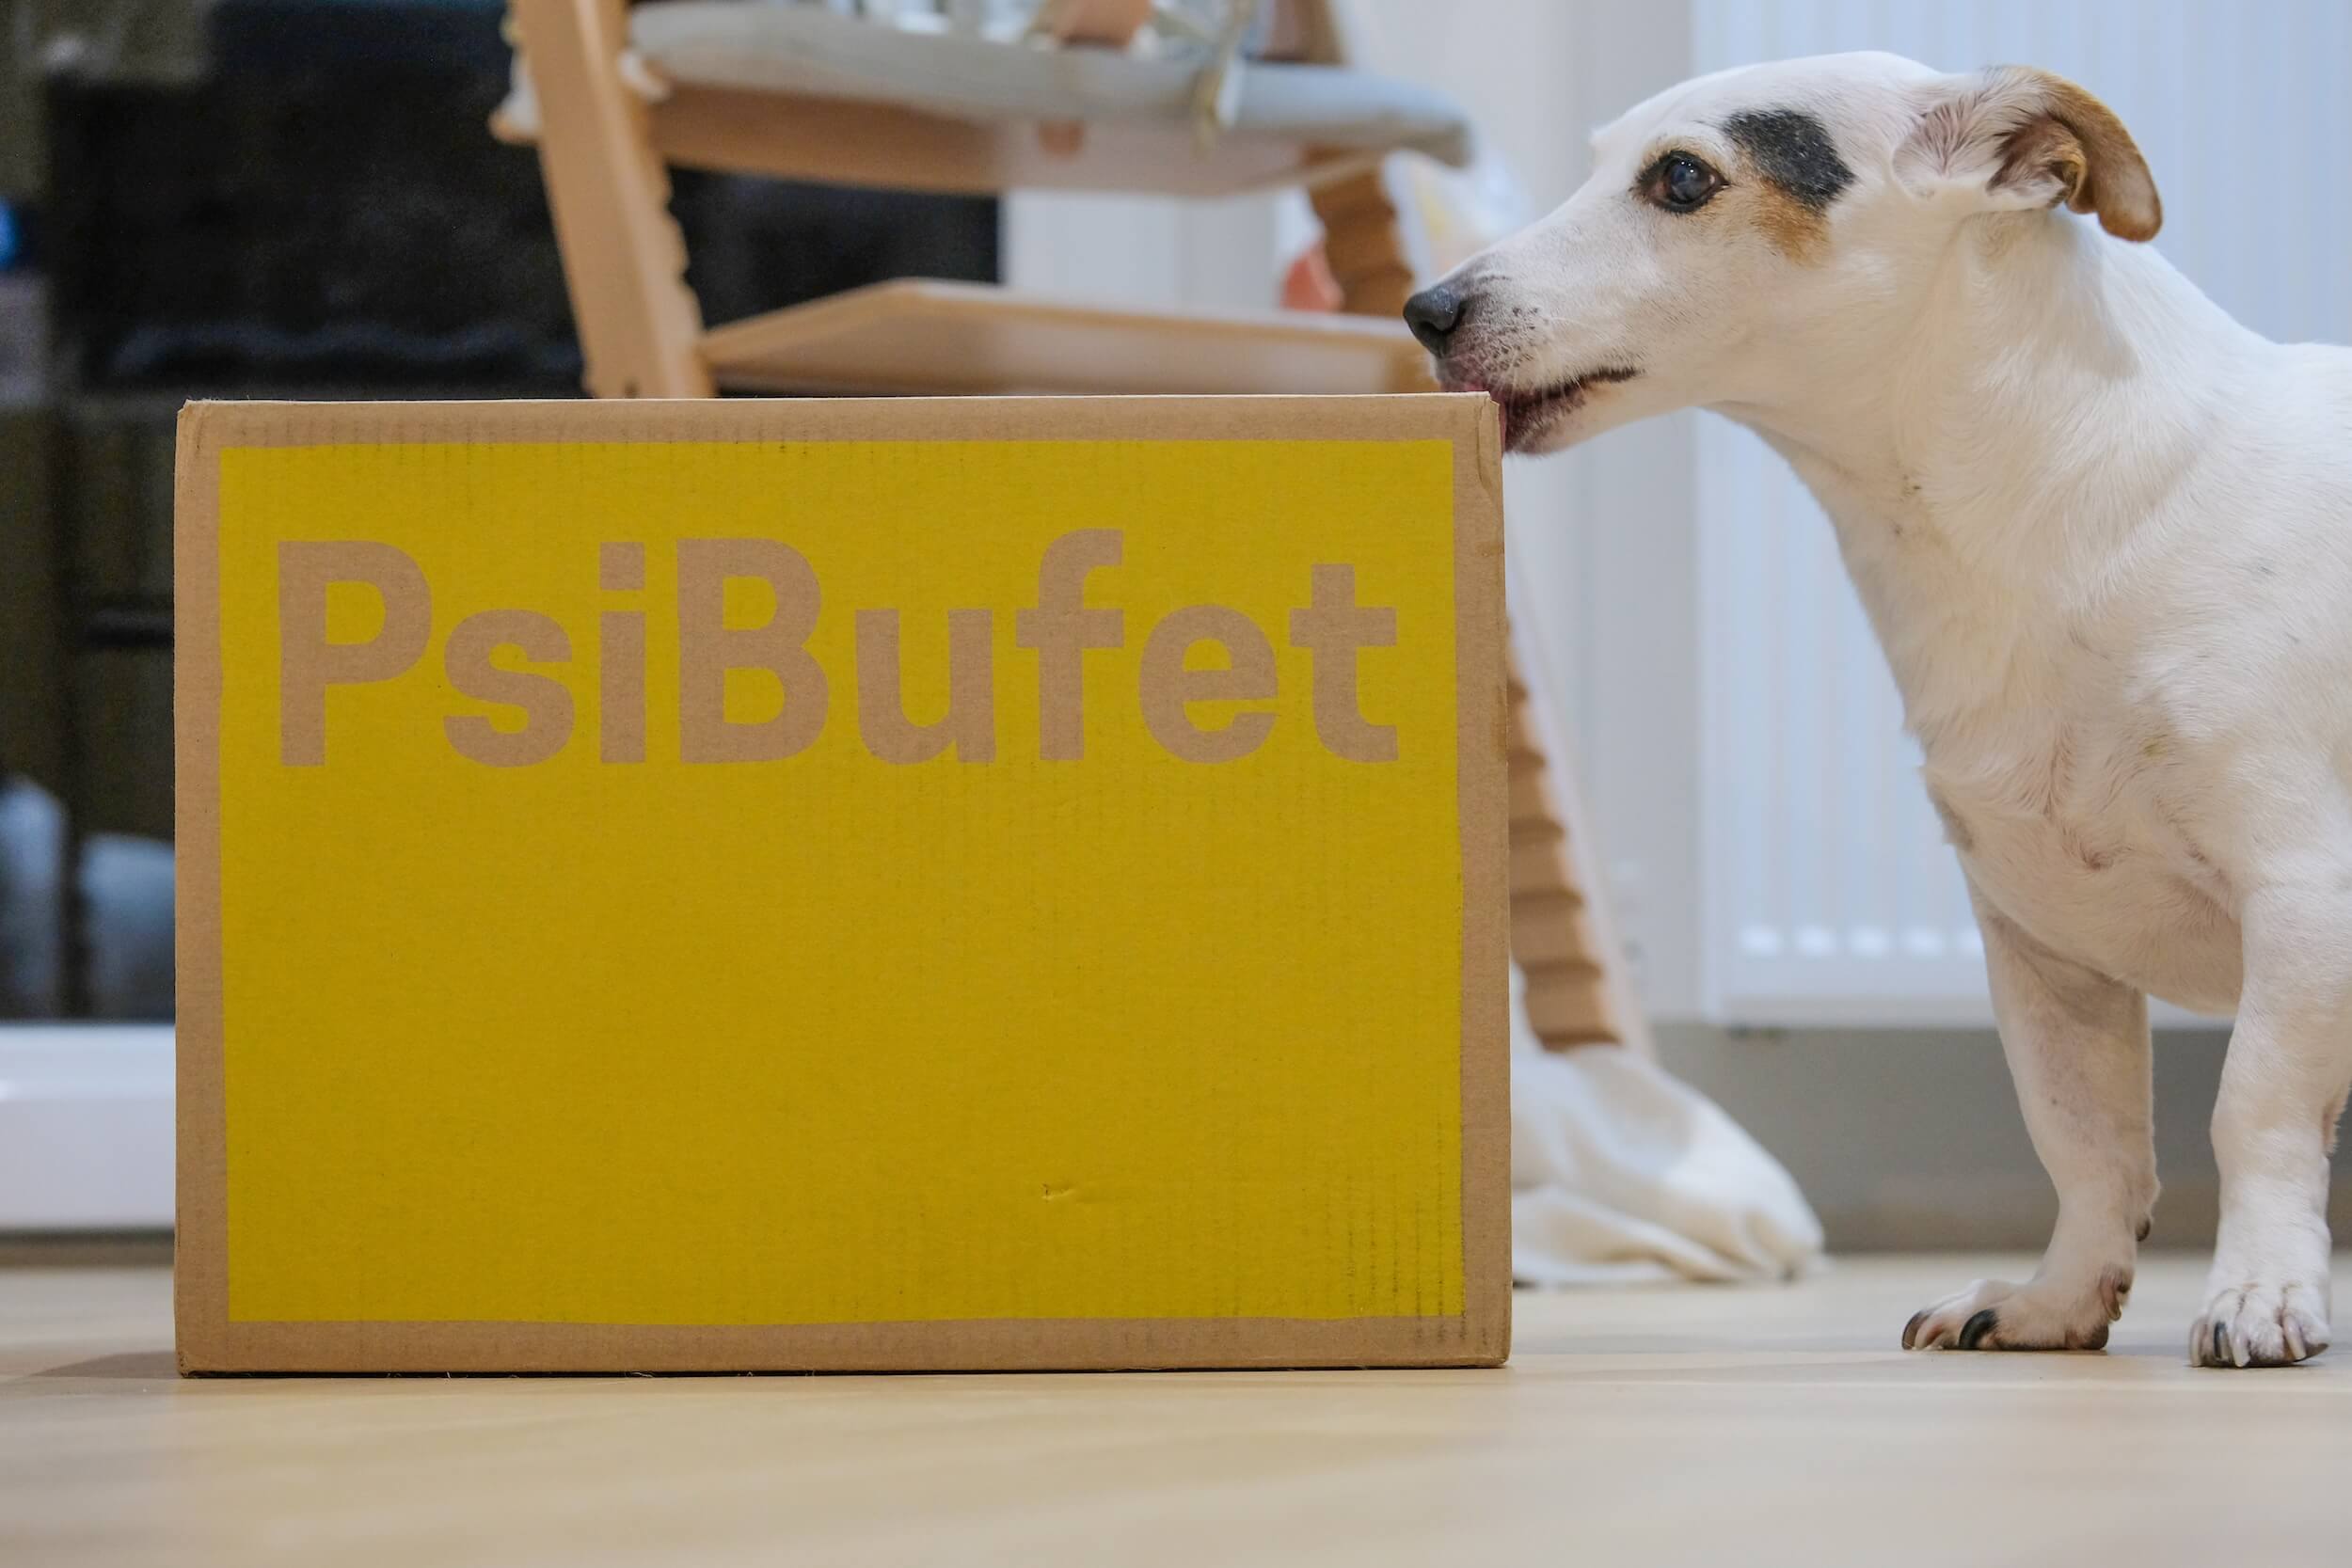 Sprawdzam Psi Bufet - Testuje Diät dla psów - Meinung? 🤔